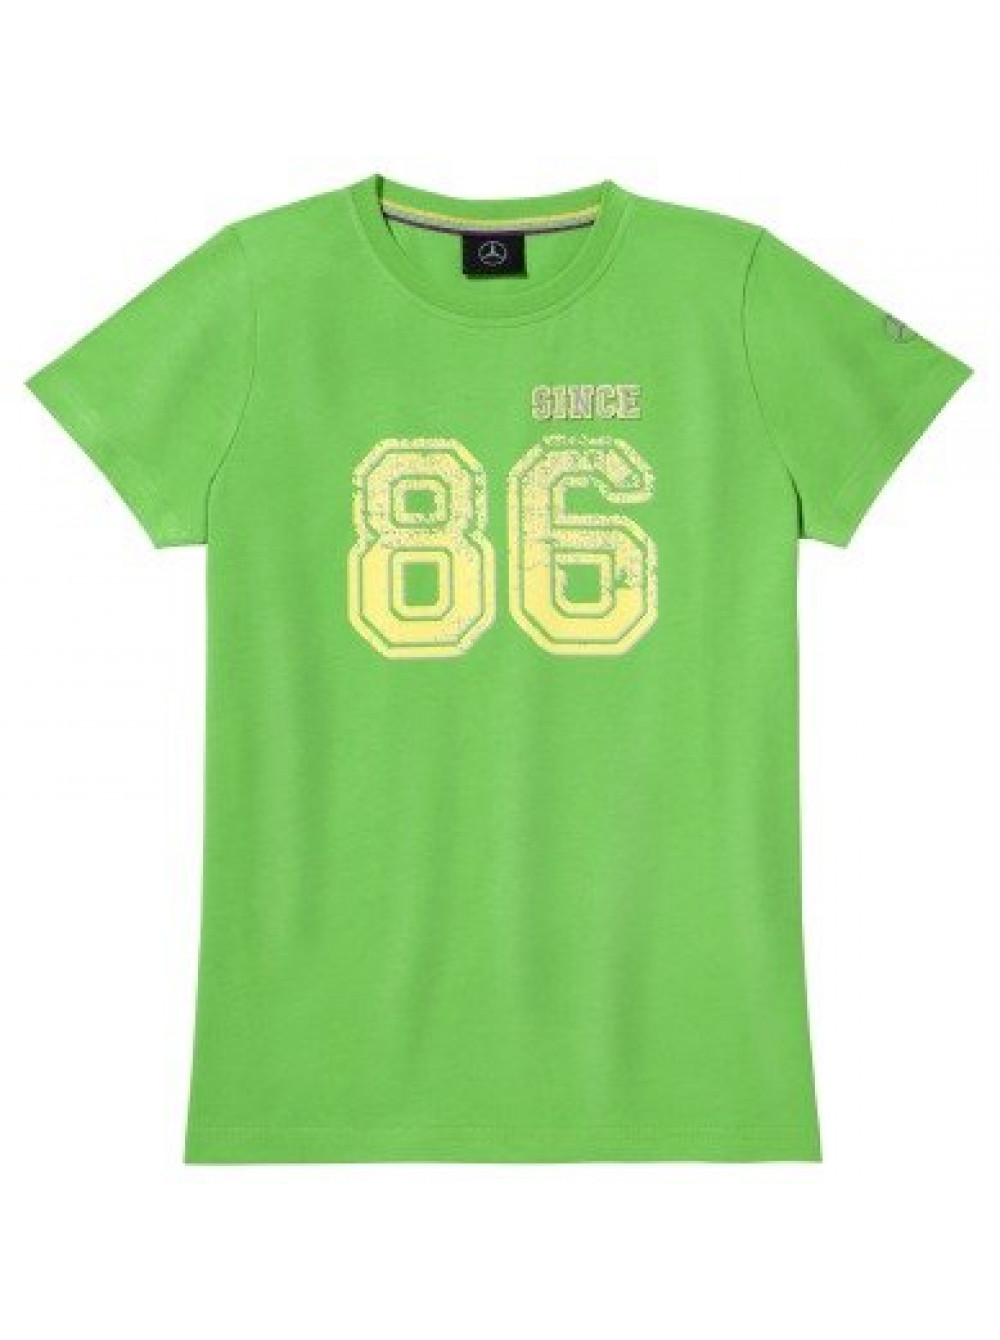   Mercedes Children's T-shirt, Green 152/158